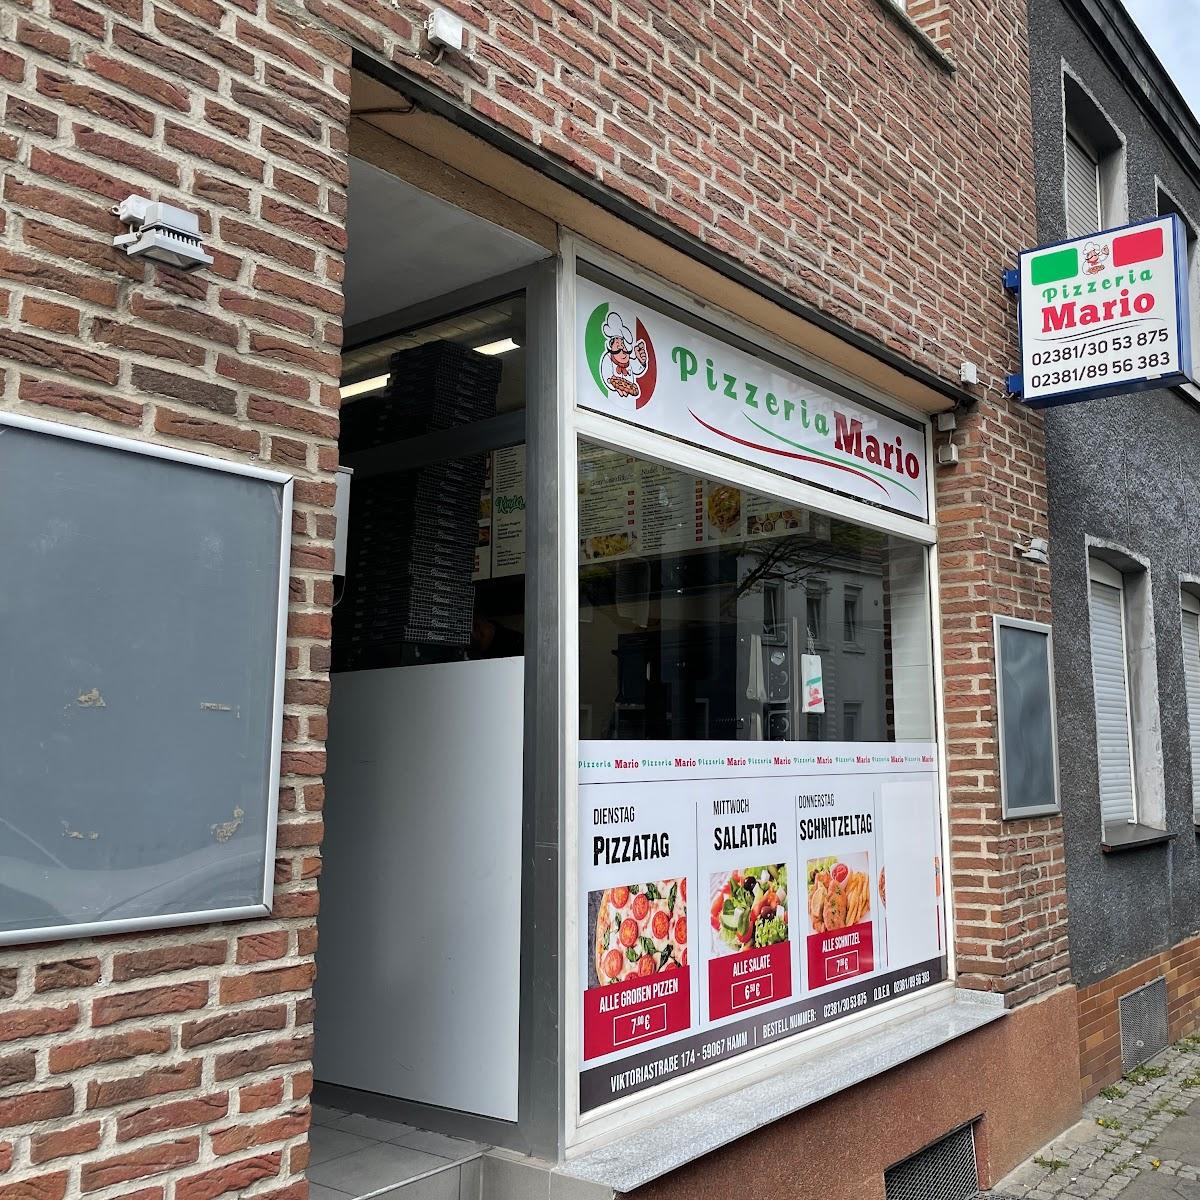 Restaurant "Pizzeria Mario" in Hamm